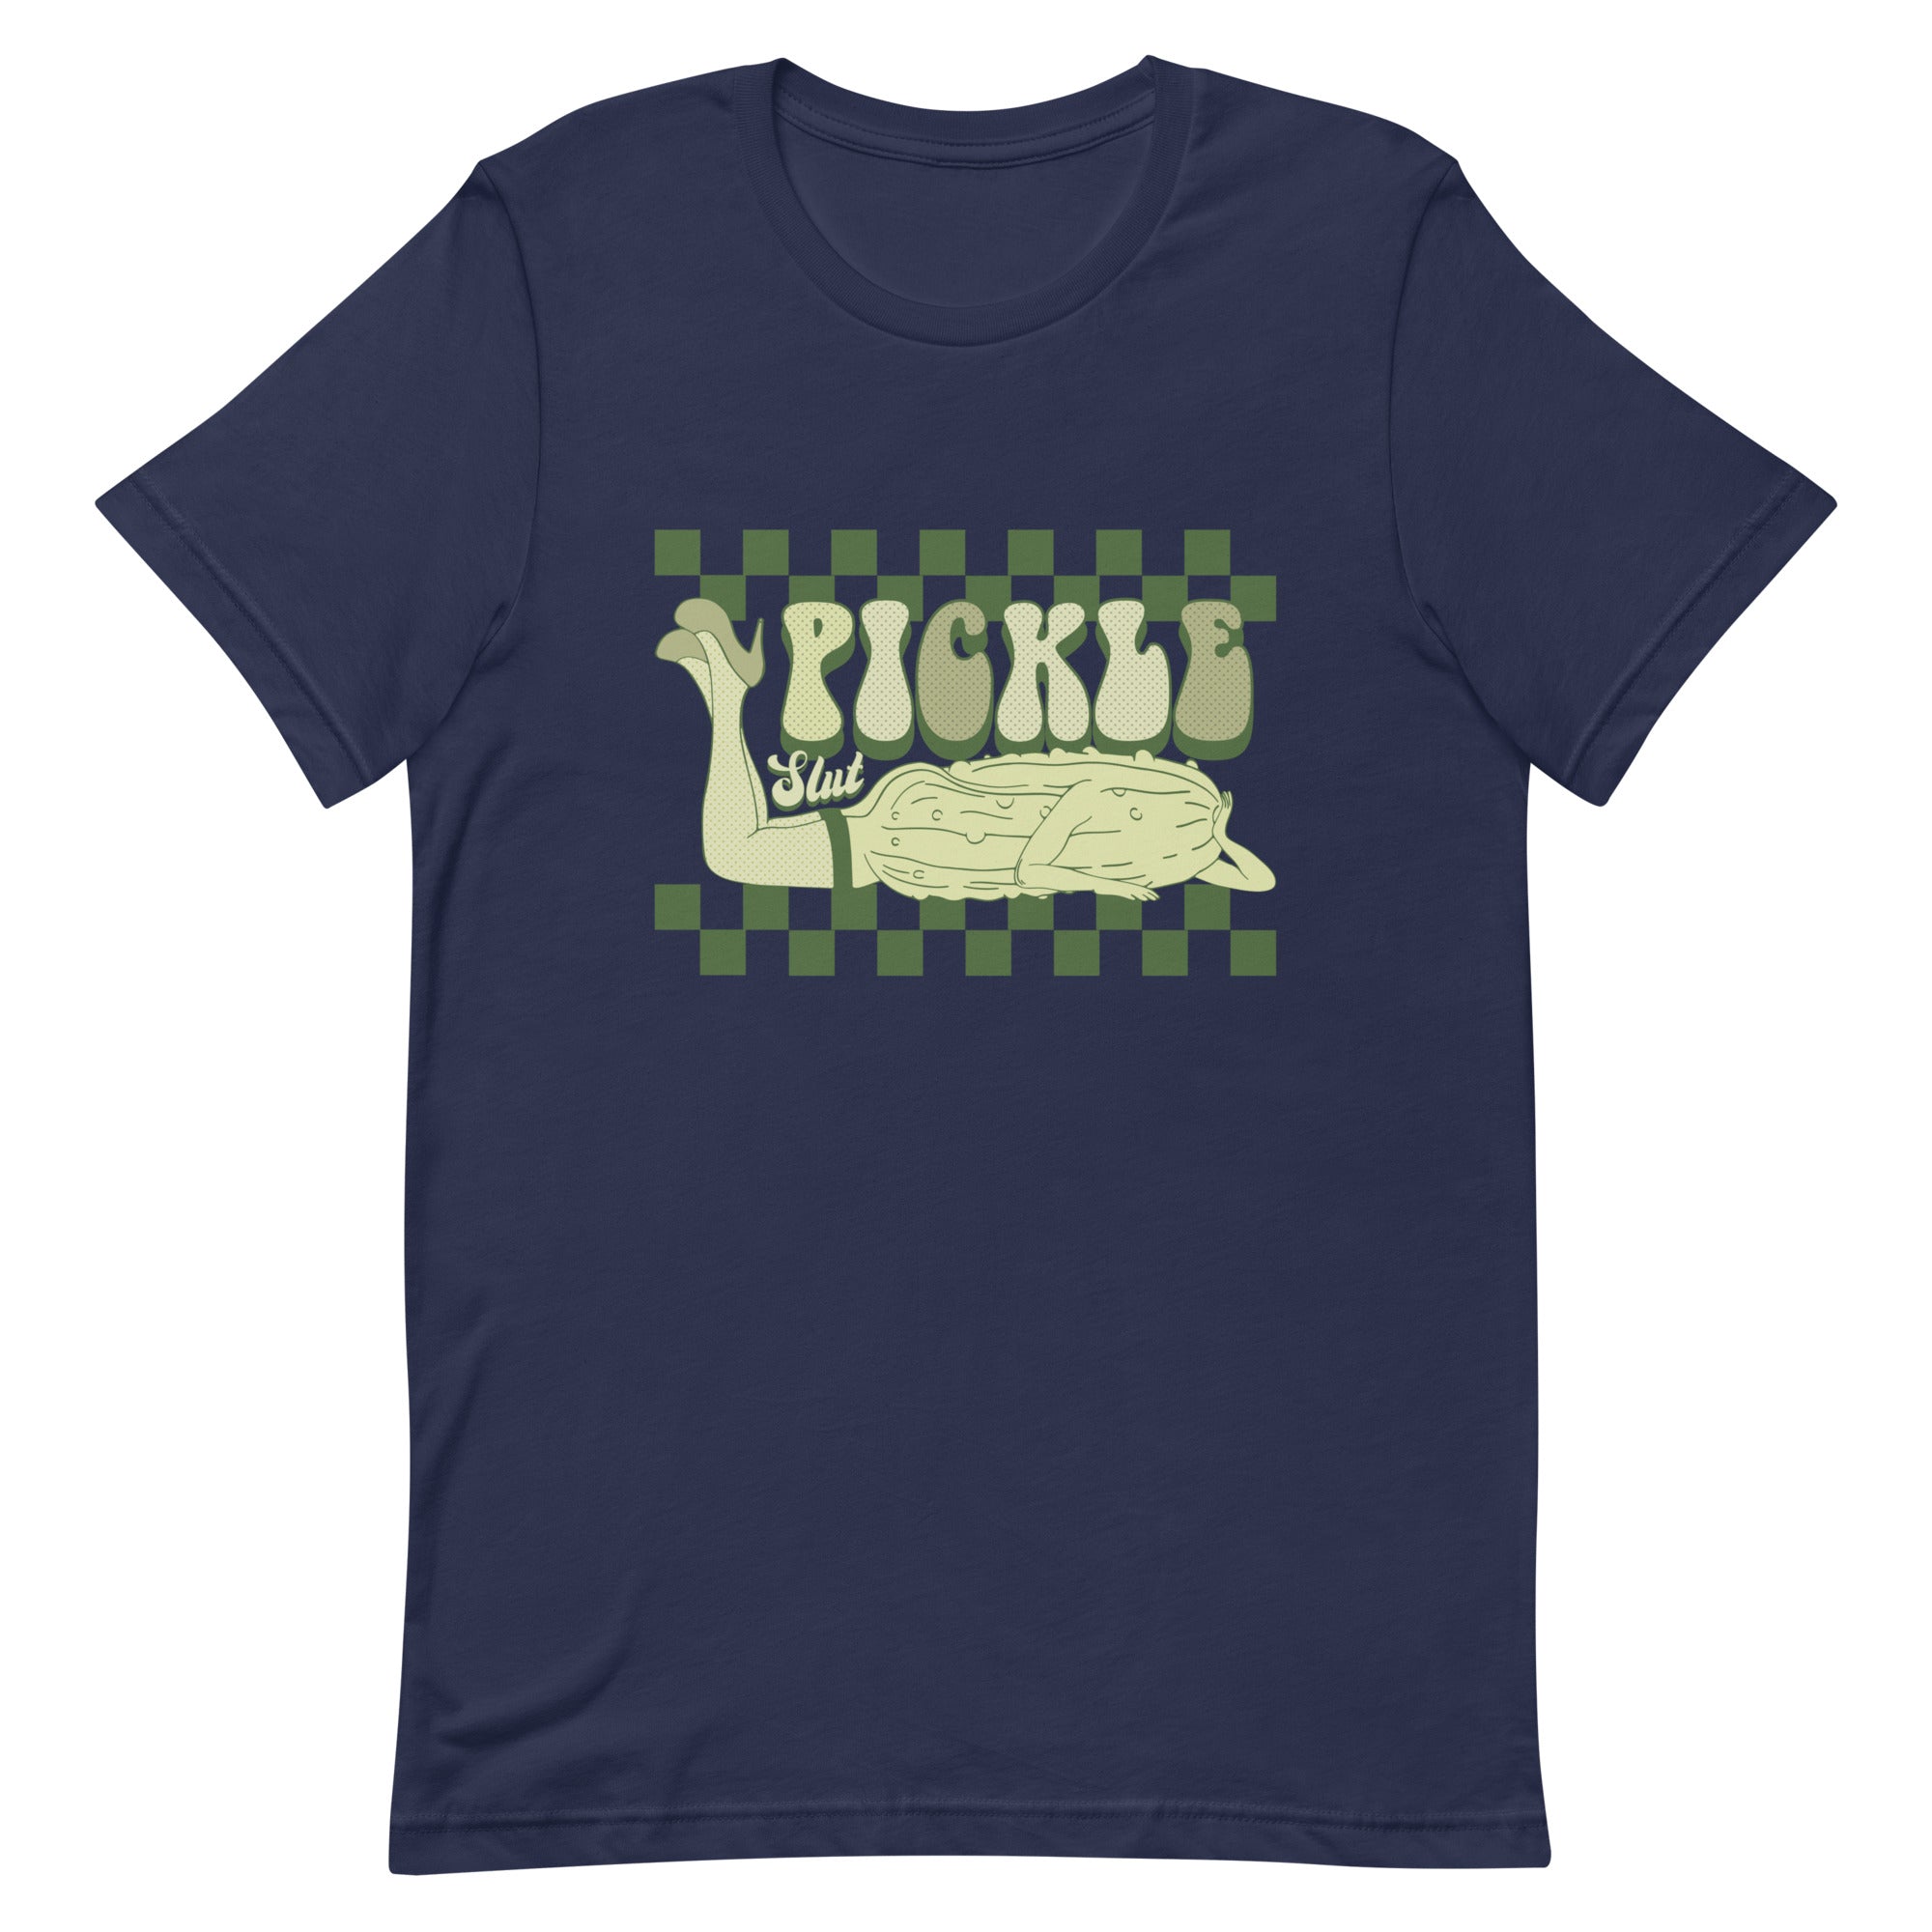 Pickle Slut Women's T-Shirt